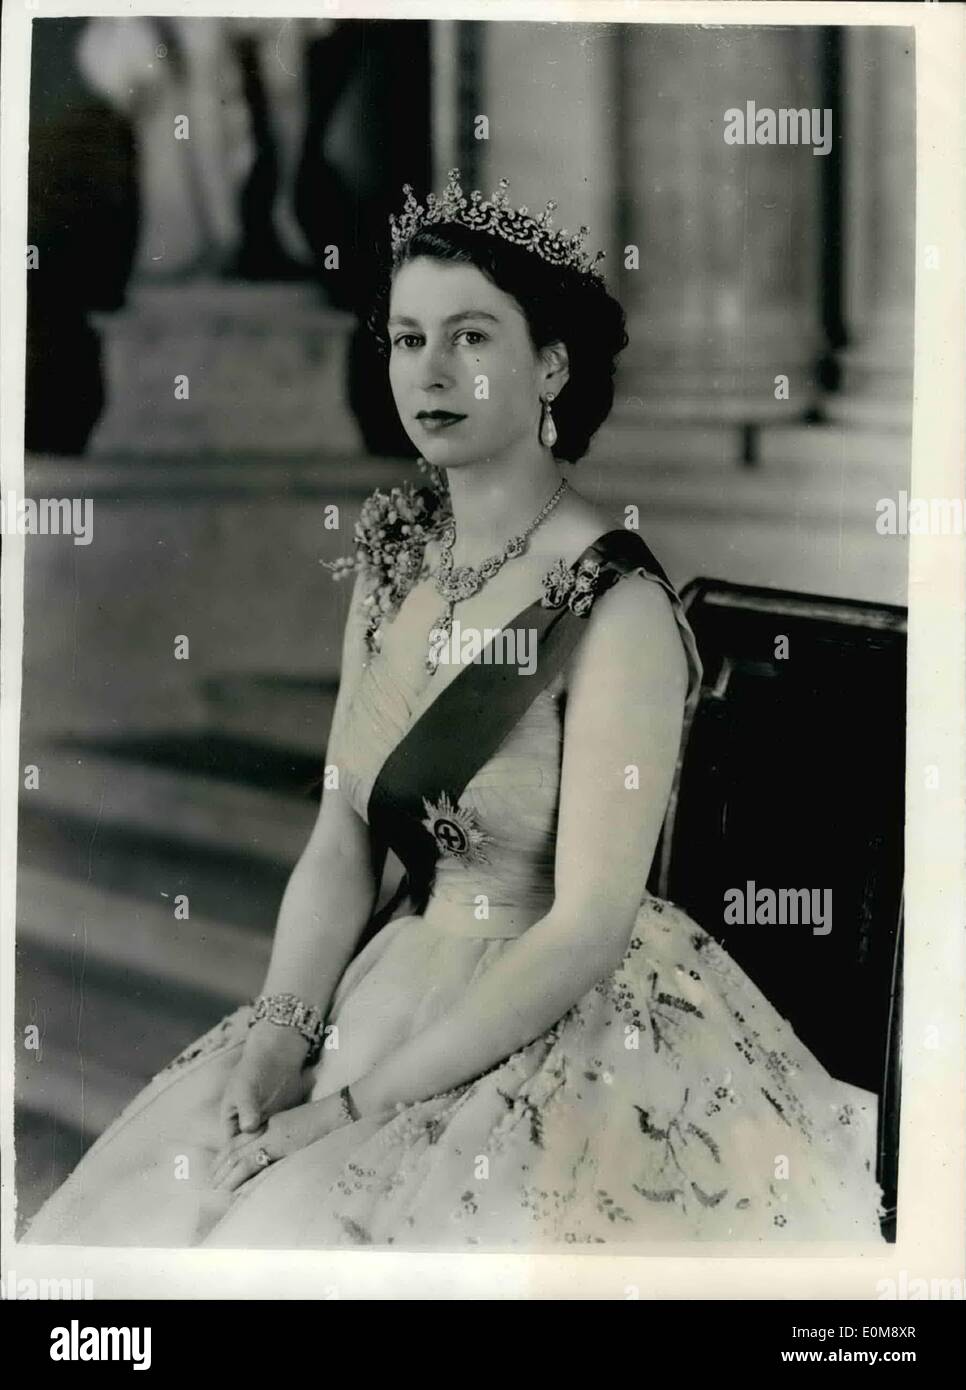 1. Januar 1954 - neue königliche Befehl Porträt von H.M Königin Elizabeth II an Buckingham Palast.: HM The Queen posierte für das neue Porträt auf die kleine Treppe vom Grand Eingang zum Buckingham Palace. Sie trägt eine gelben Tüll Abendkleid mit Spray von Mimosen und gold Pailletten-Stickerei - Blue Ribbon und Star des Hosenbandordens verziert. Ihre Halskette ist ein Hochzeitsgeschenk von der Nizam von Hyderabad - die Tiara ist ein Hochzeitsgeschenk von Queen Mary. Die Bogen-Brosche - Ohrringe, Armband und Platin Armbanduhr auch in Diamanten gesetzt. Bild von Baron. Stockfoto